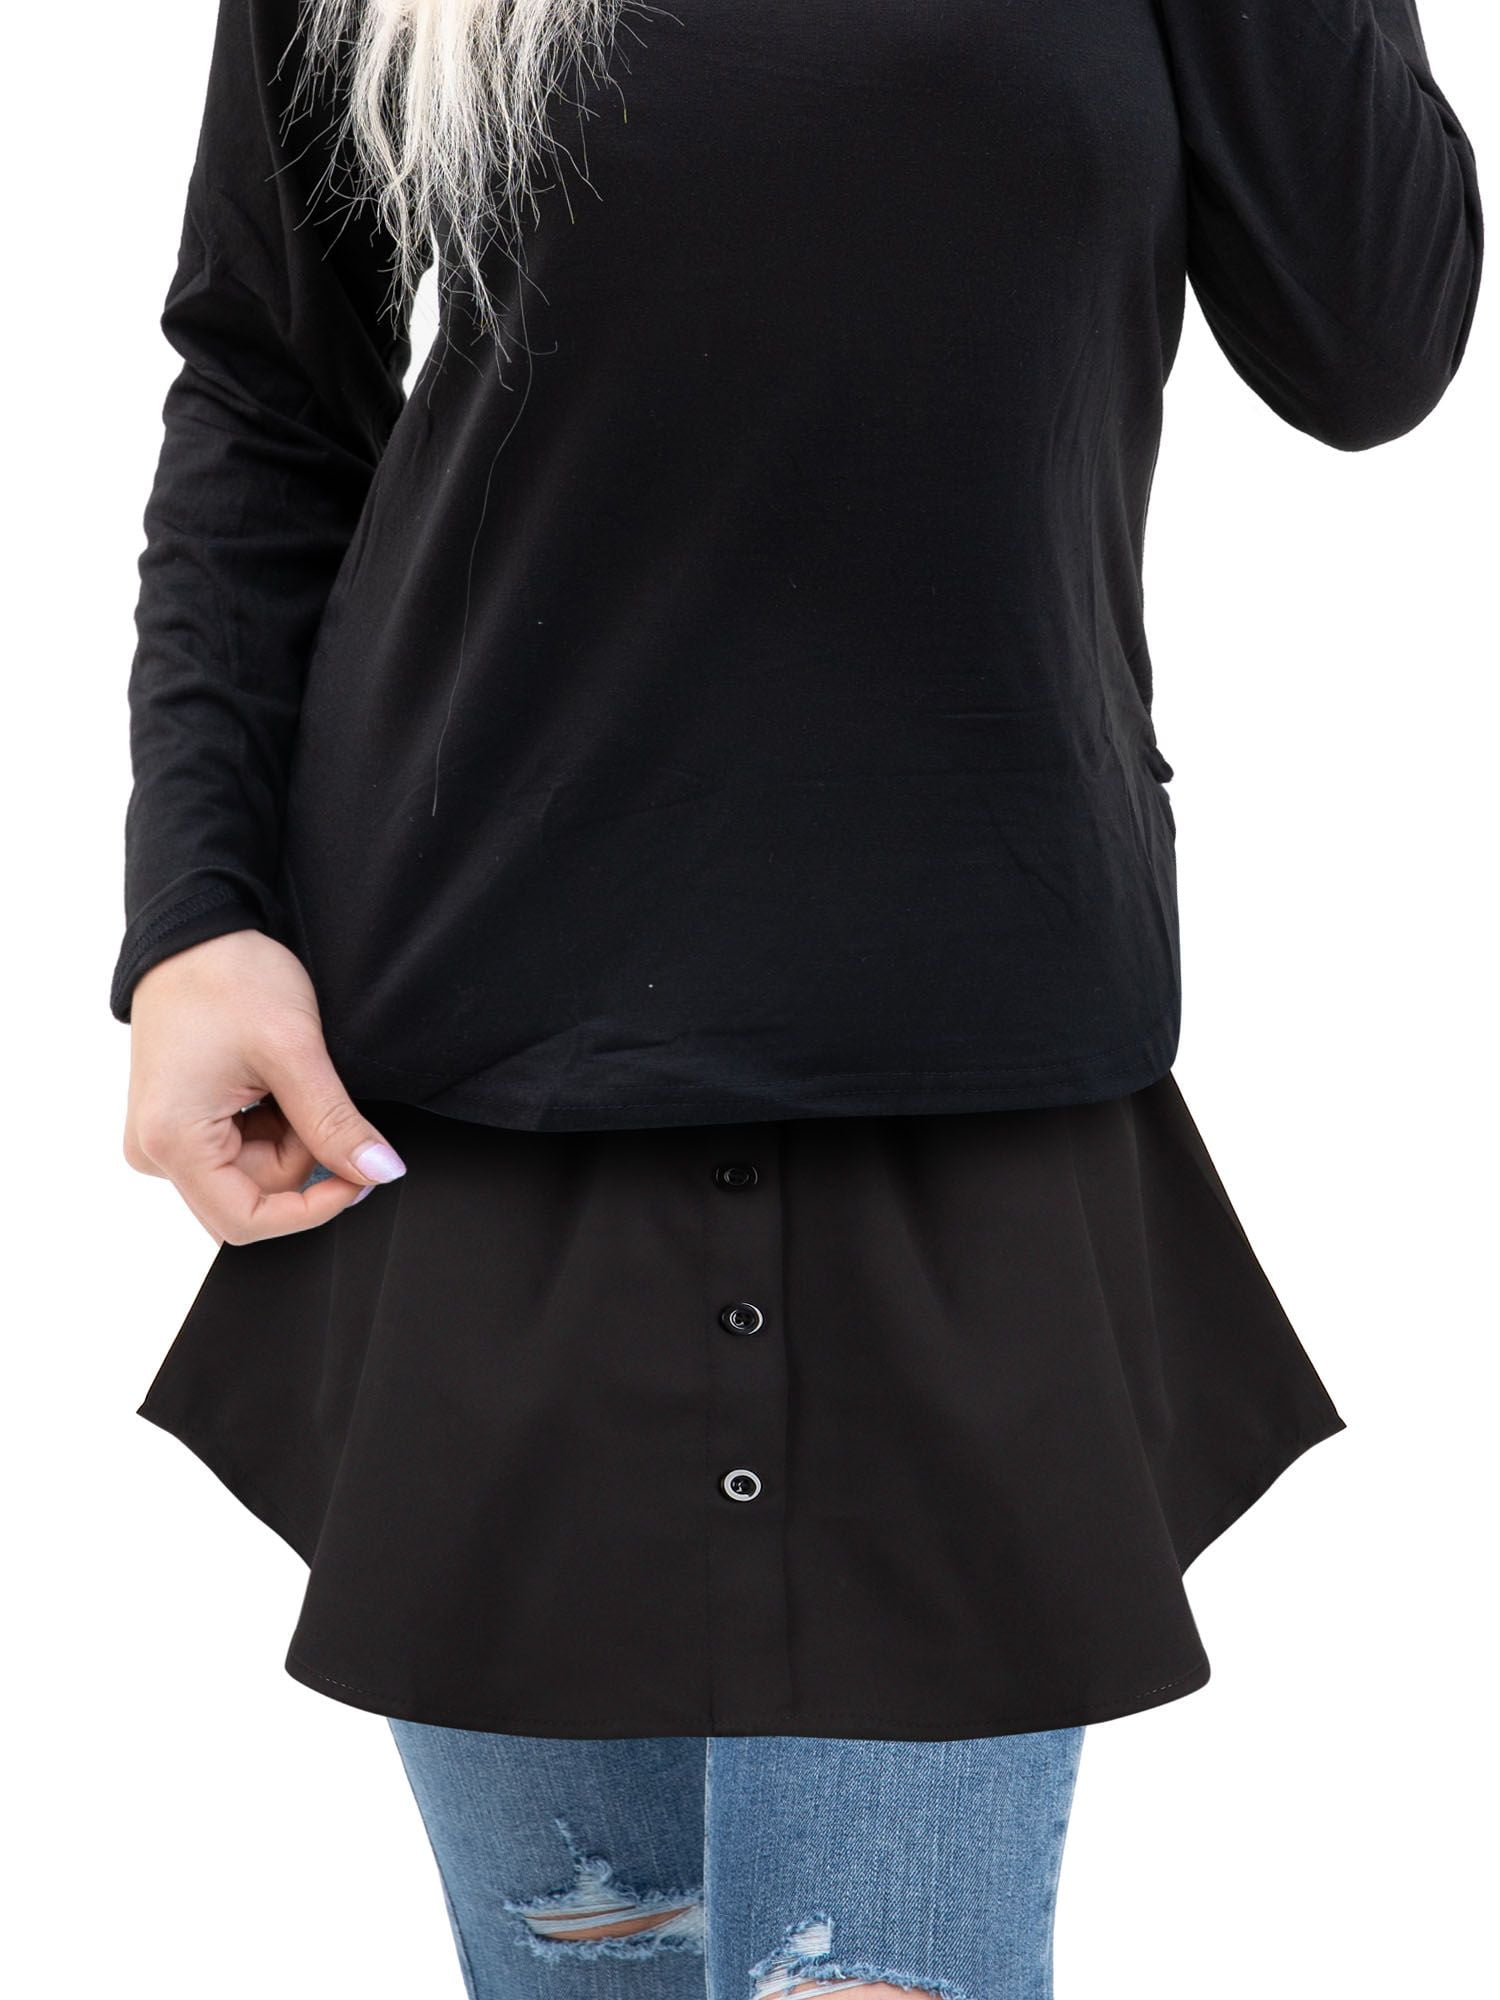 dfgsxifc Detachable Shirt Extender for Women, Women Adjustable Layering  Shirt Extenders (3pcsC,4X-Large)